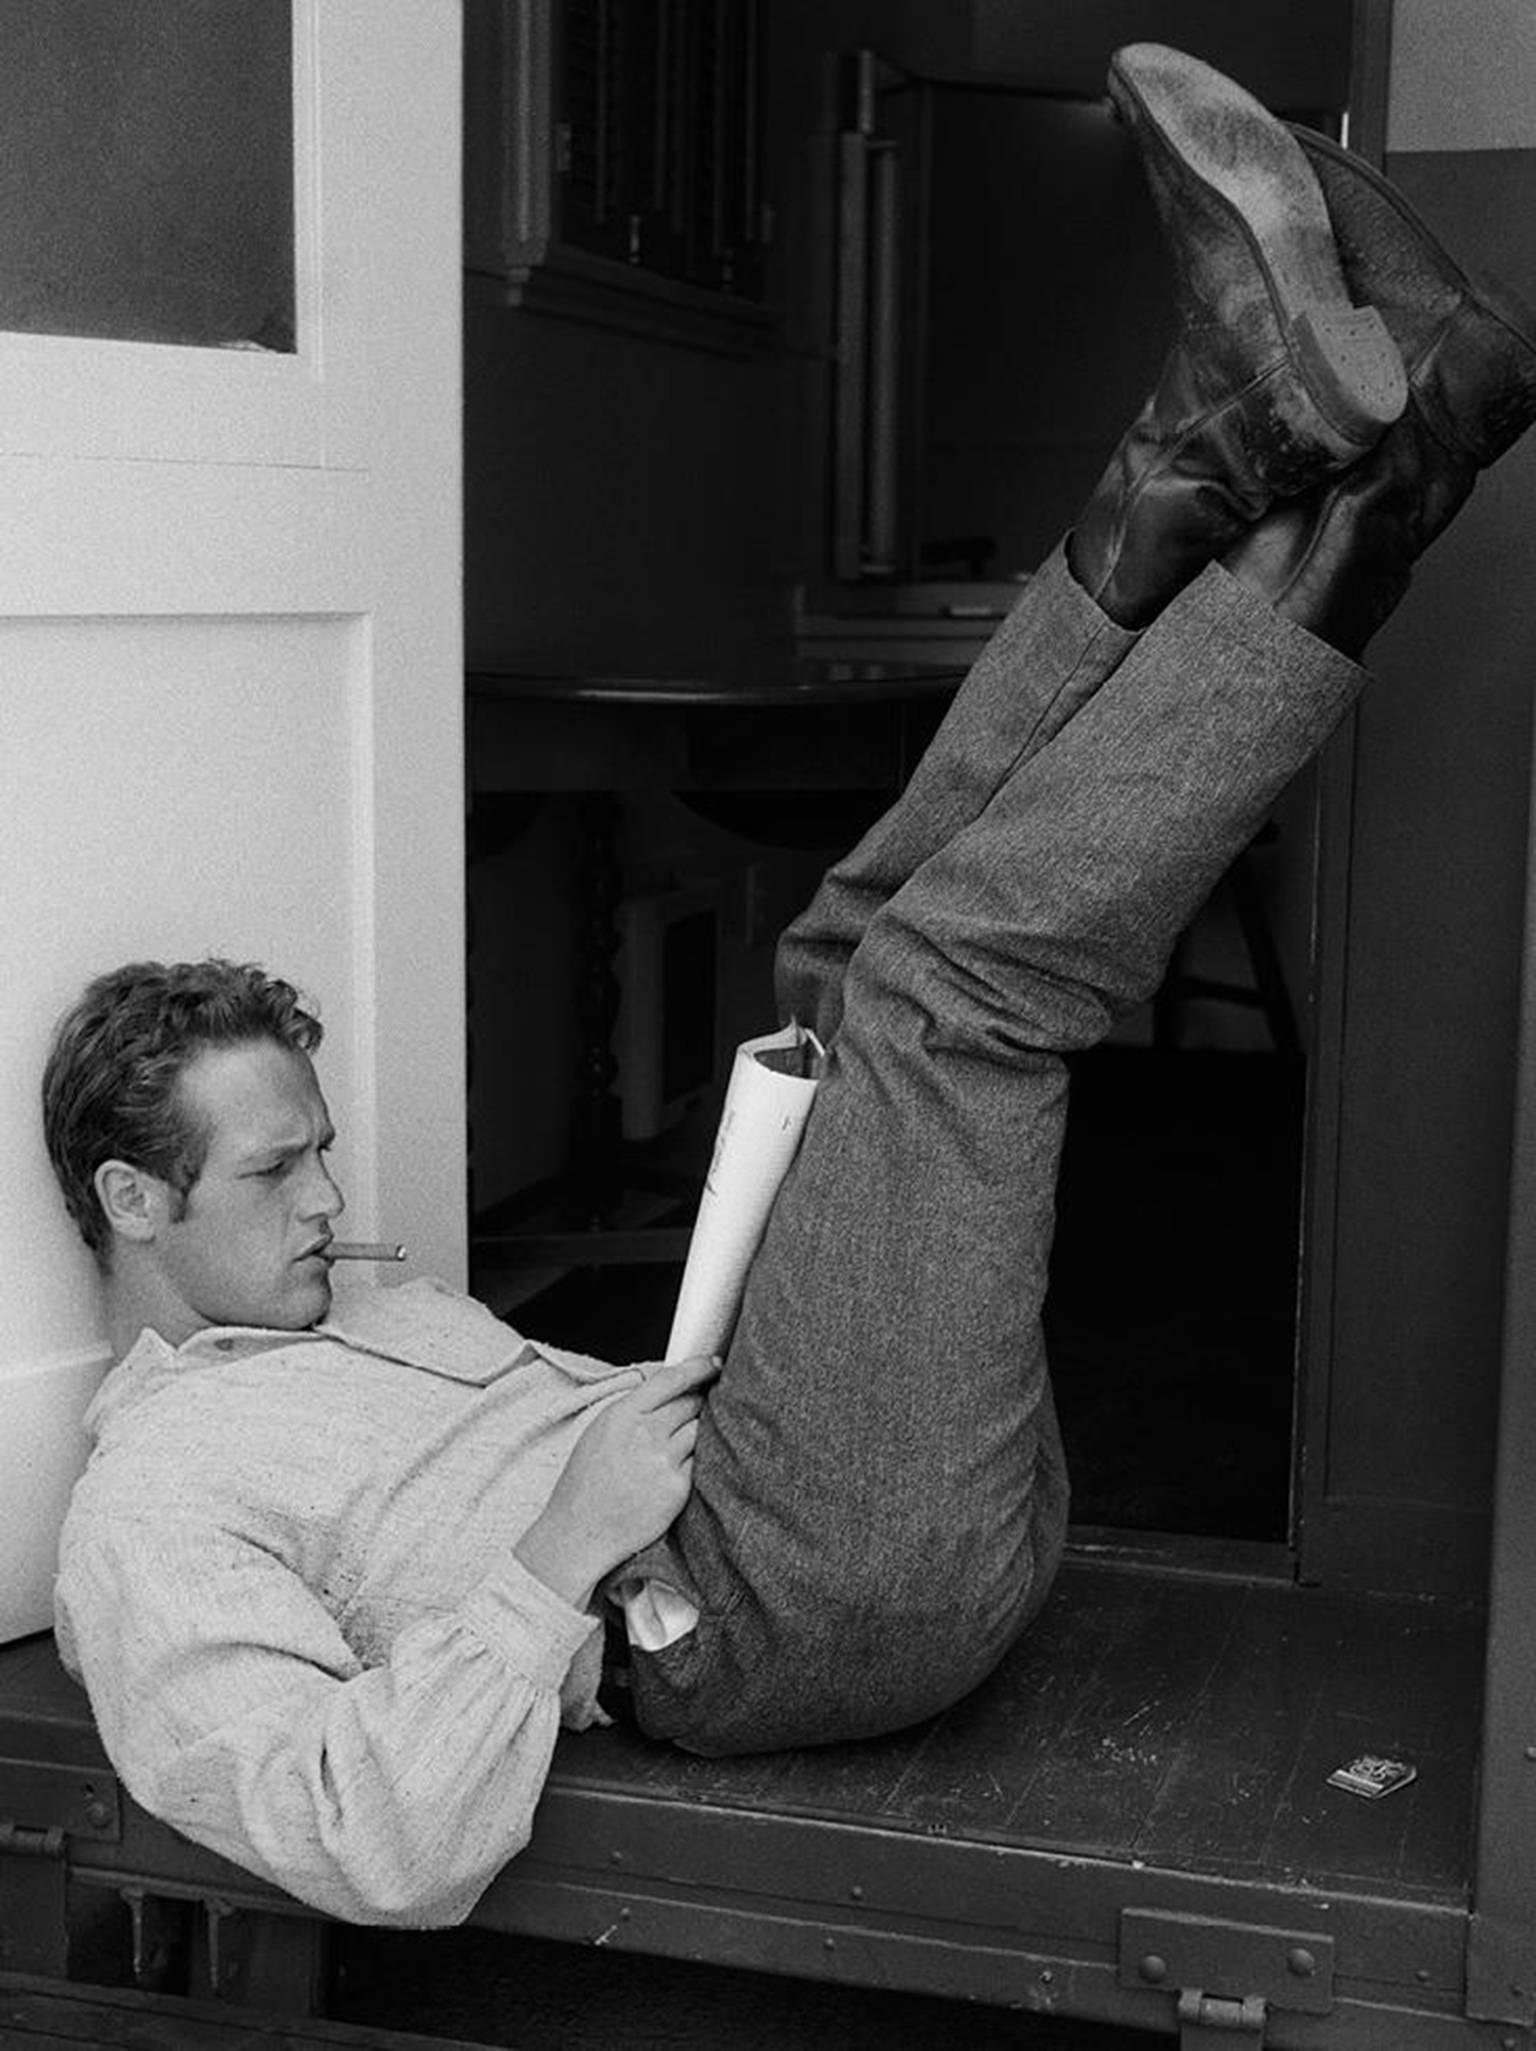 John R. Hamilton Black and White Photograph – Paul Newman, Fuß nach oben, „Die rechte Waffe“, 1958